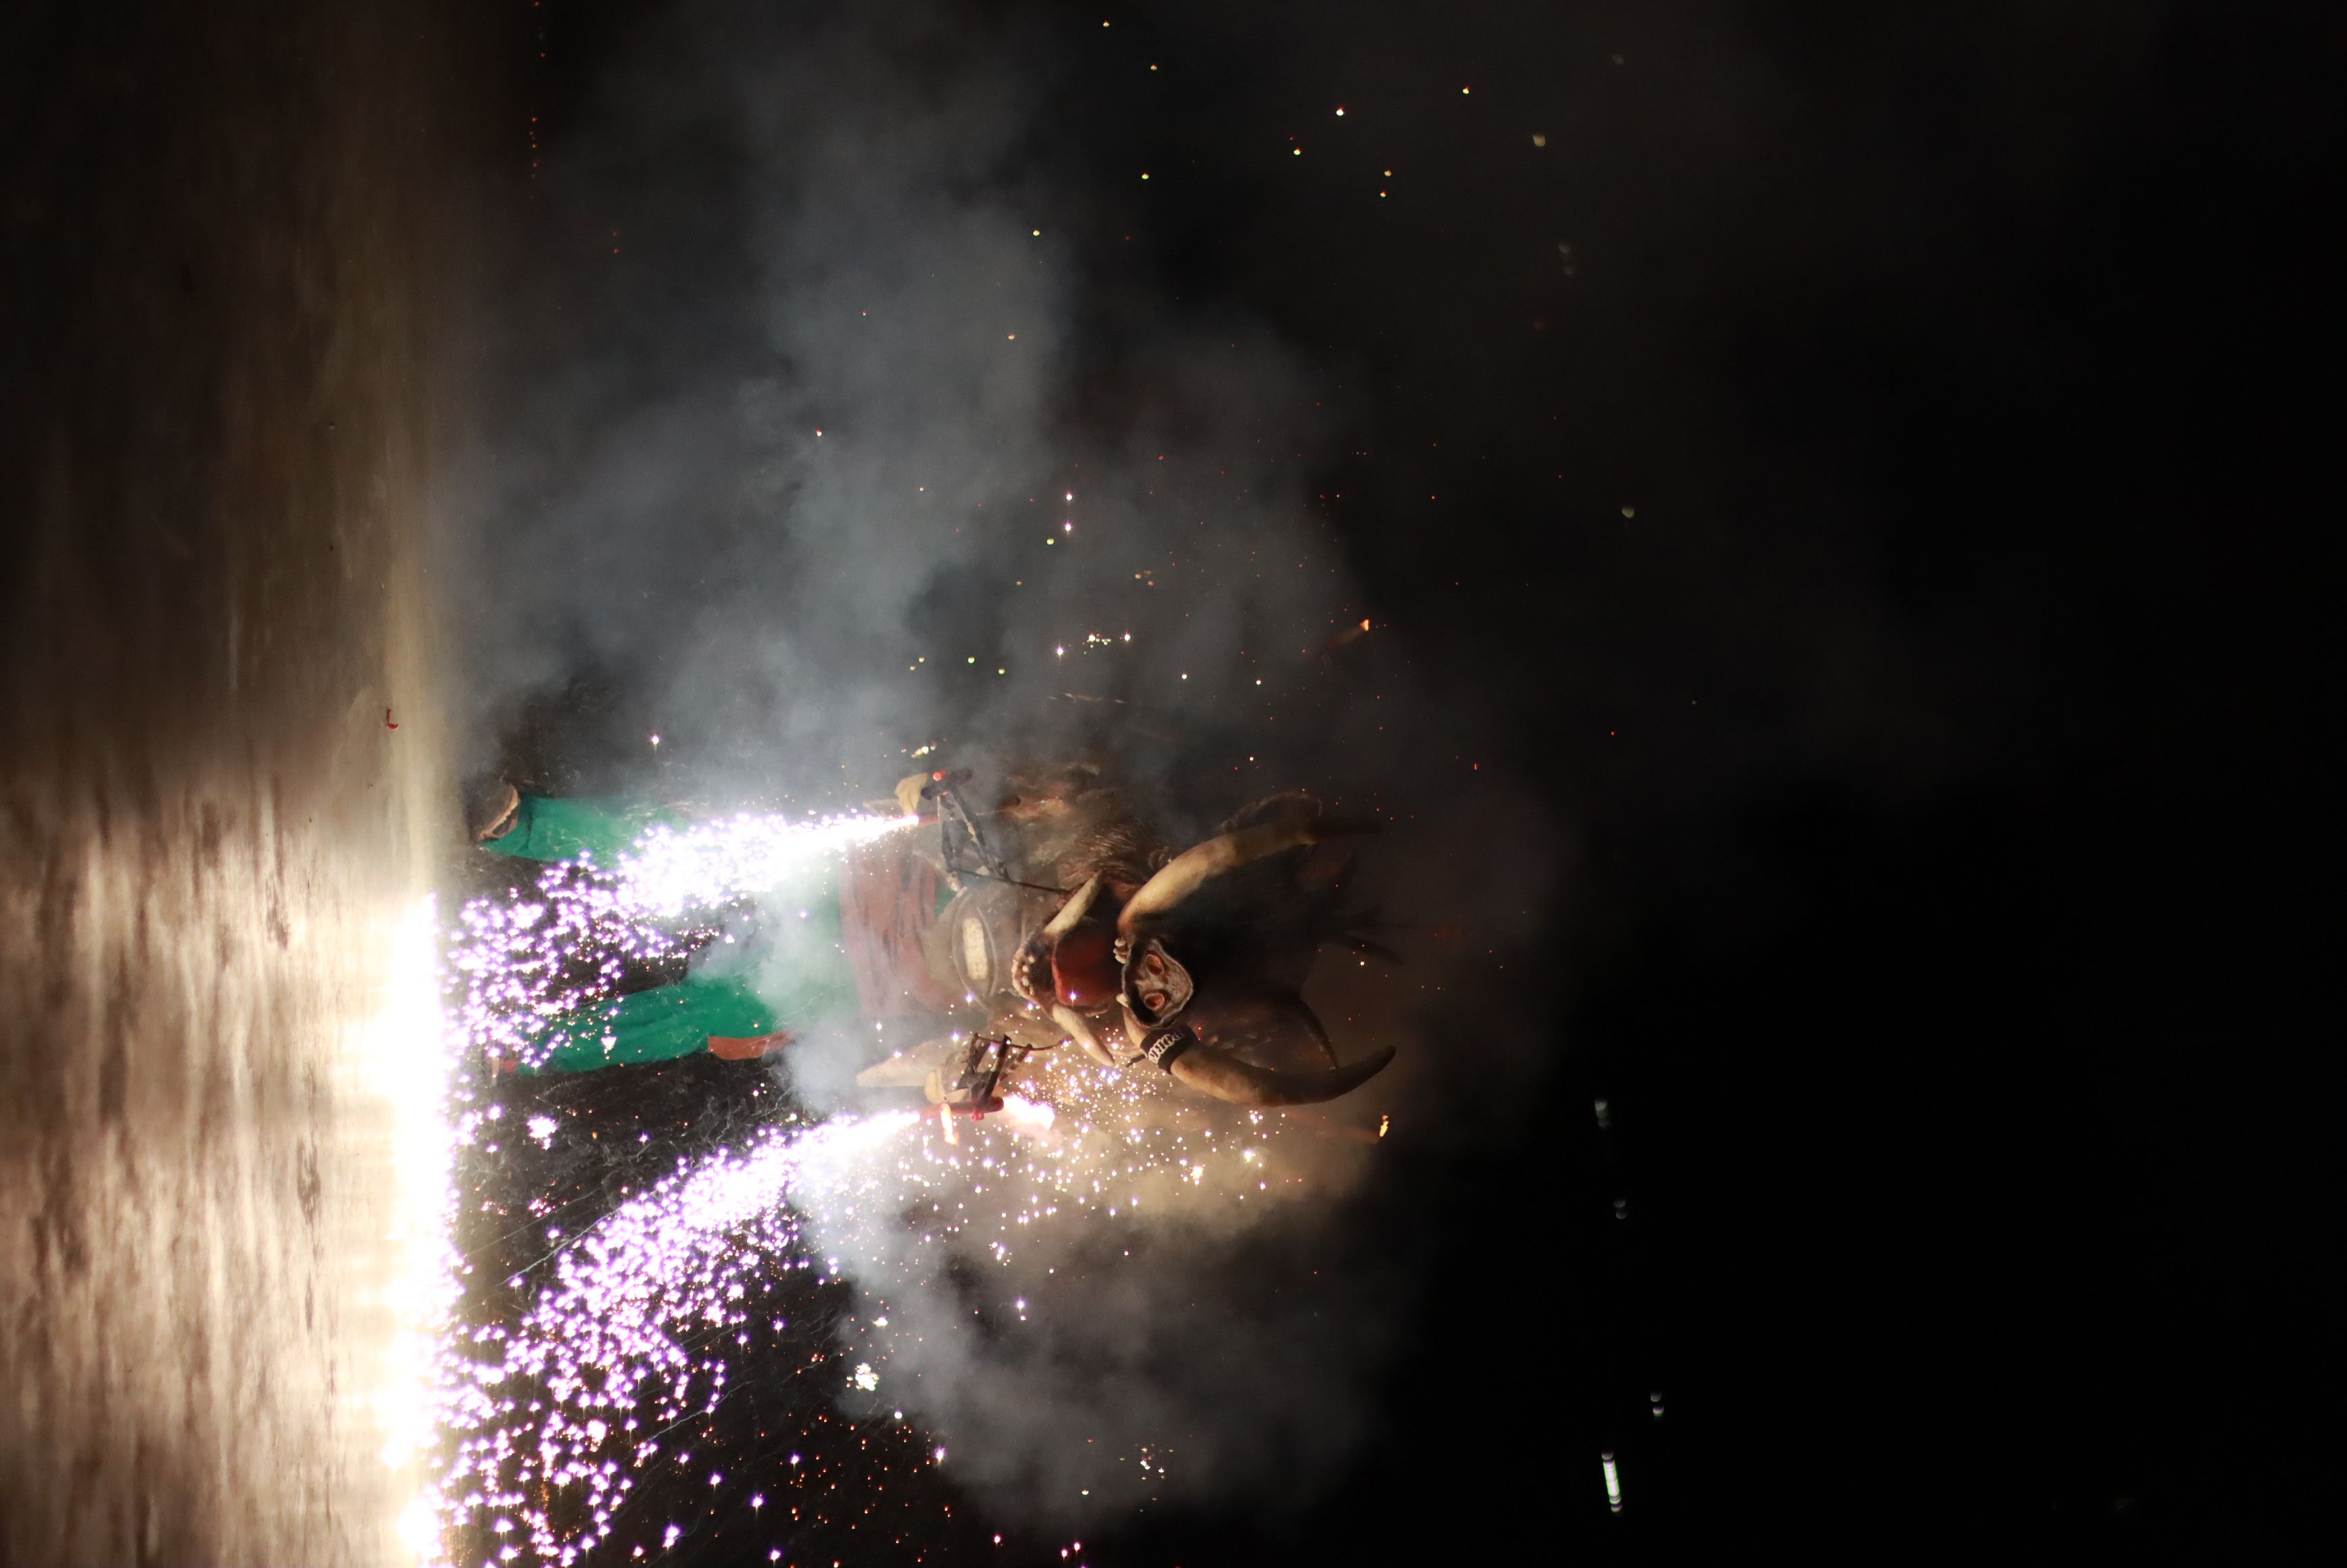 Les bèsties de foc i les colles de diables de Rubí donen el tret de sortida a la Festa Major Petita de Sant Roc. FOTO: Josep Llamas